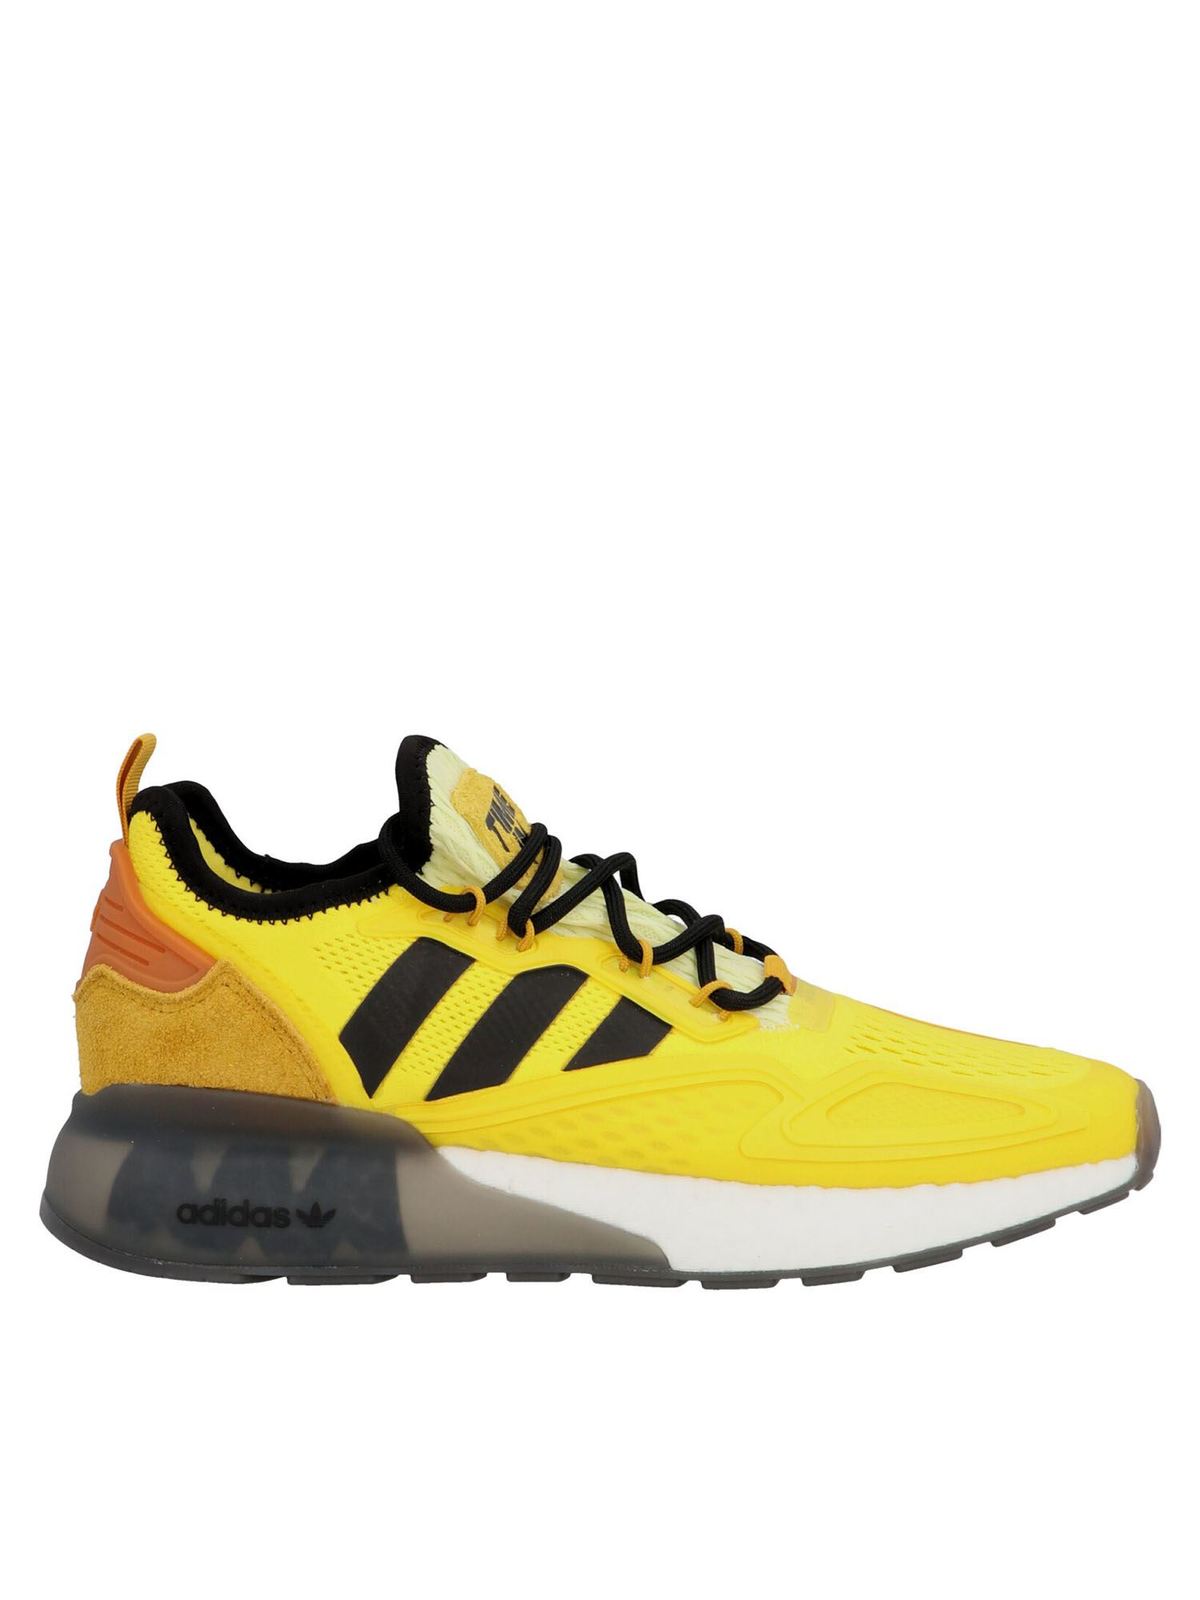 pad Giraffe doden Trainers Adidas Originals - Ninja ZX 2K Boost sneakers in yellow - FZ1887